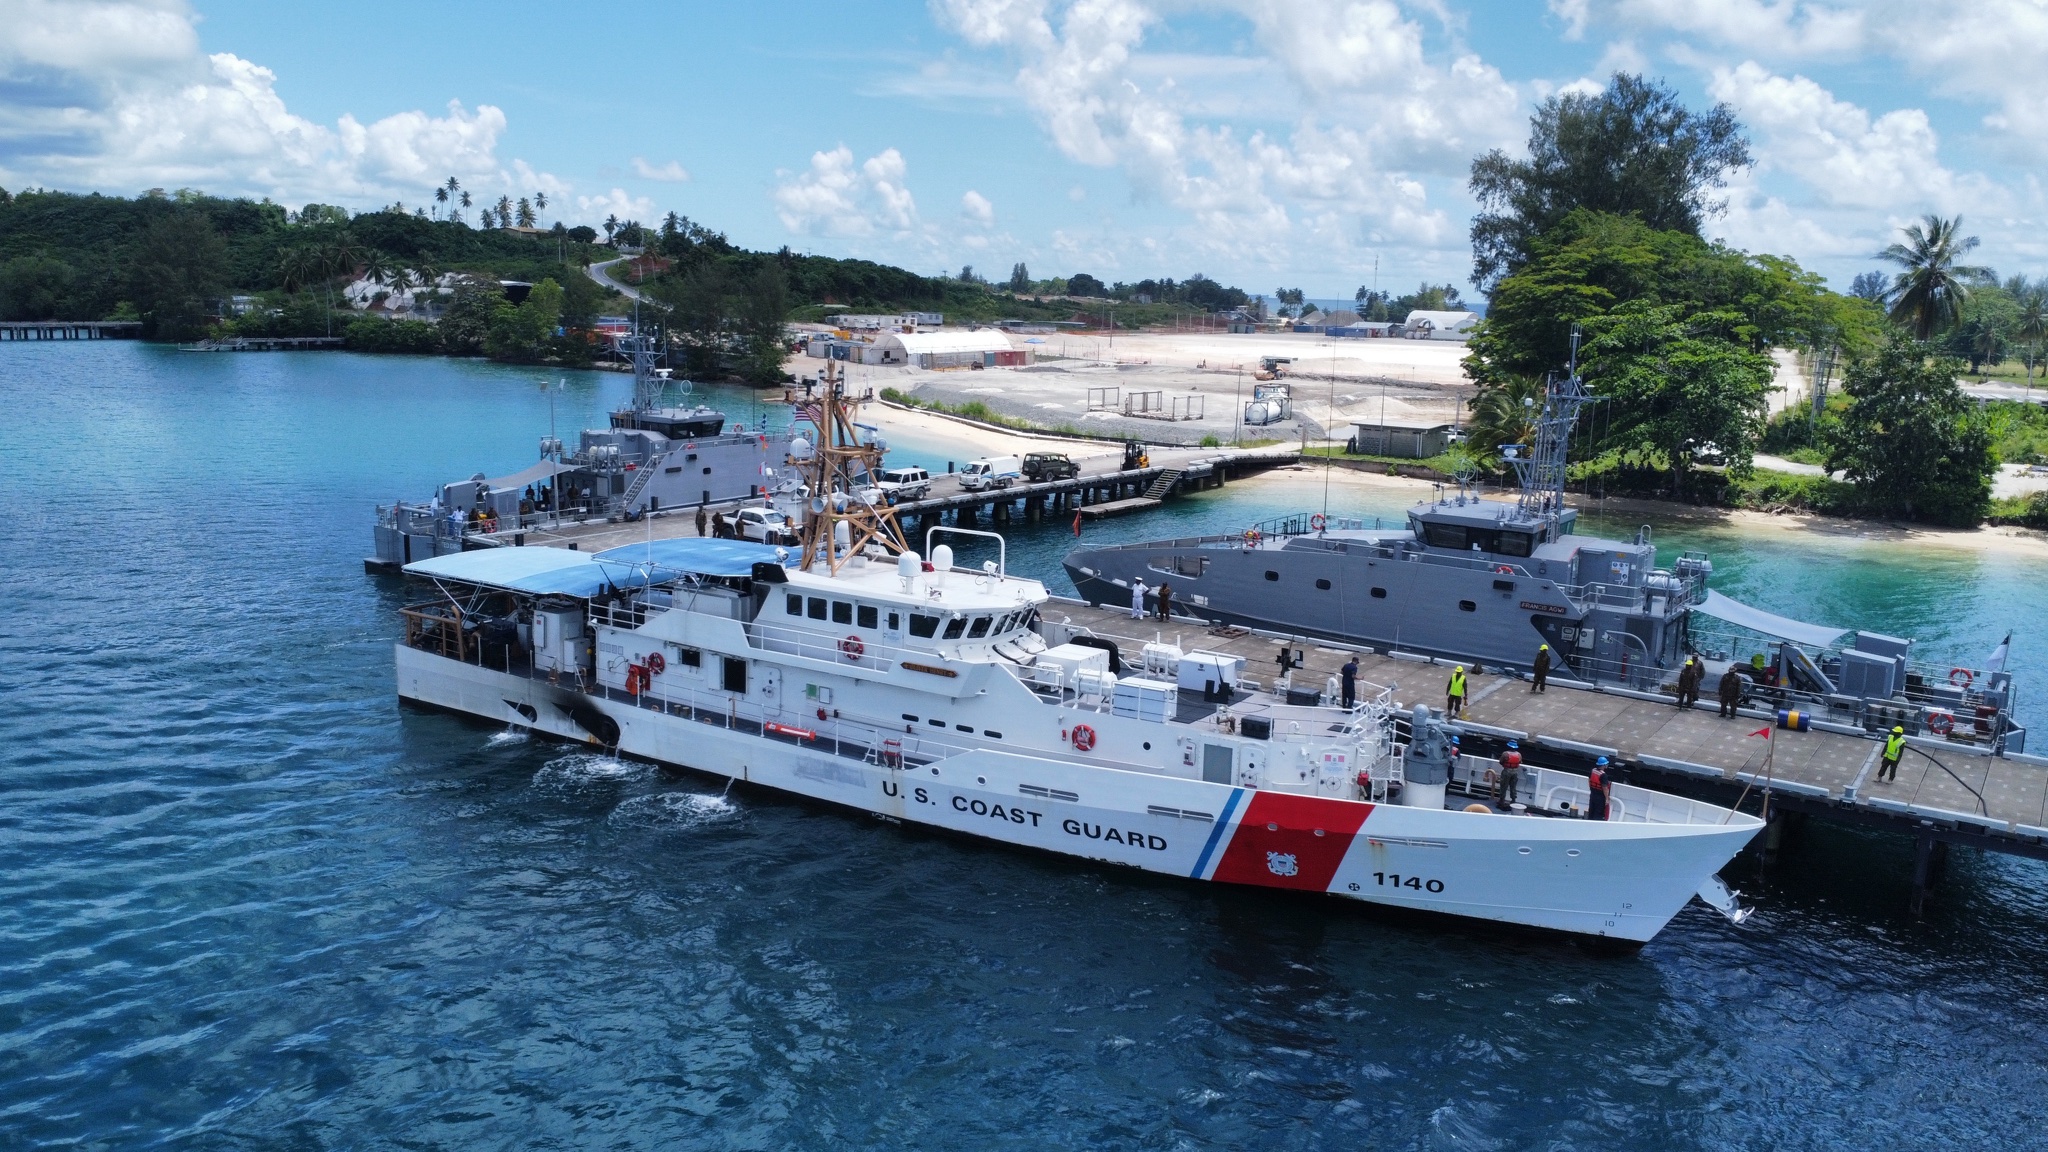   所罗门群岛暂停让所有美国海军船舰到访  